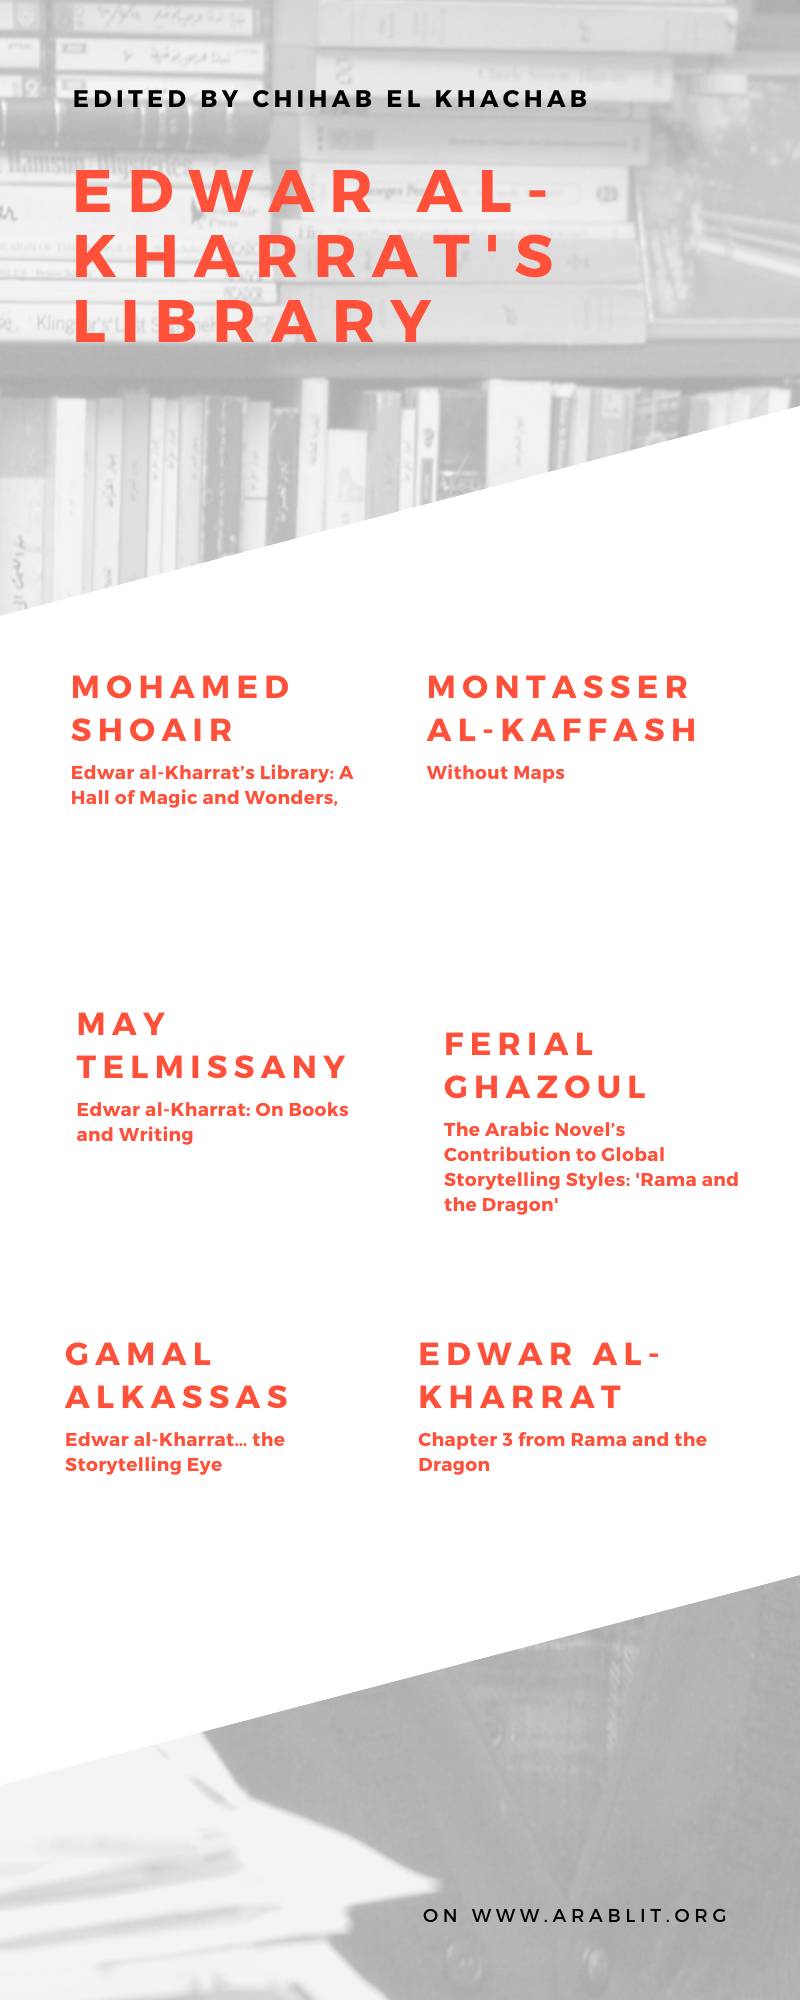 Edwar al-Kharrat Memorial Library,